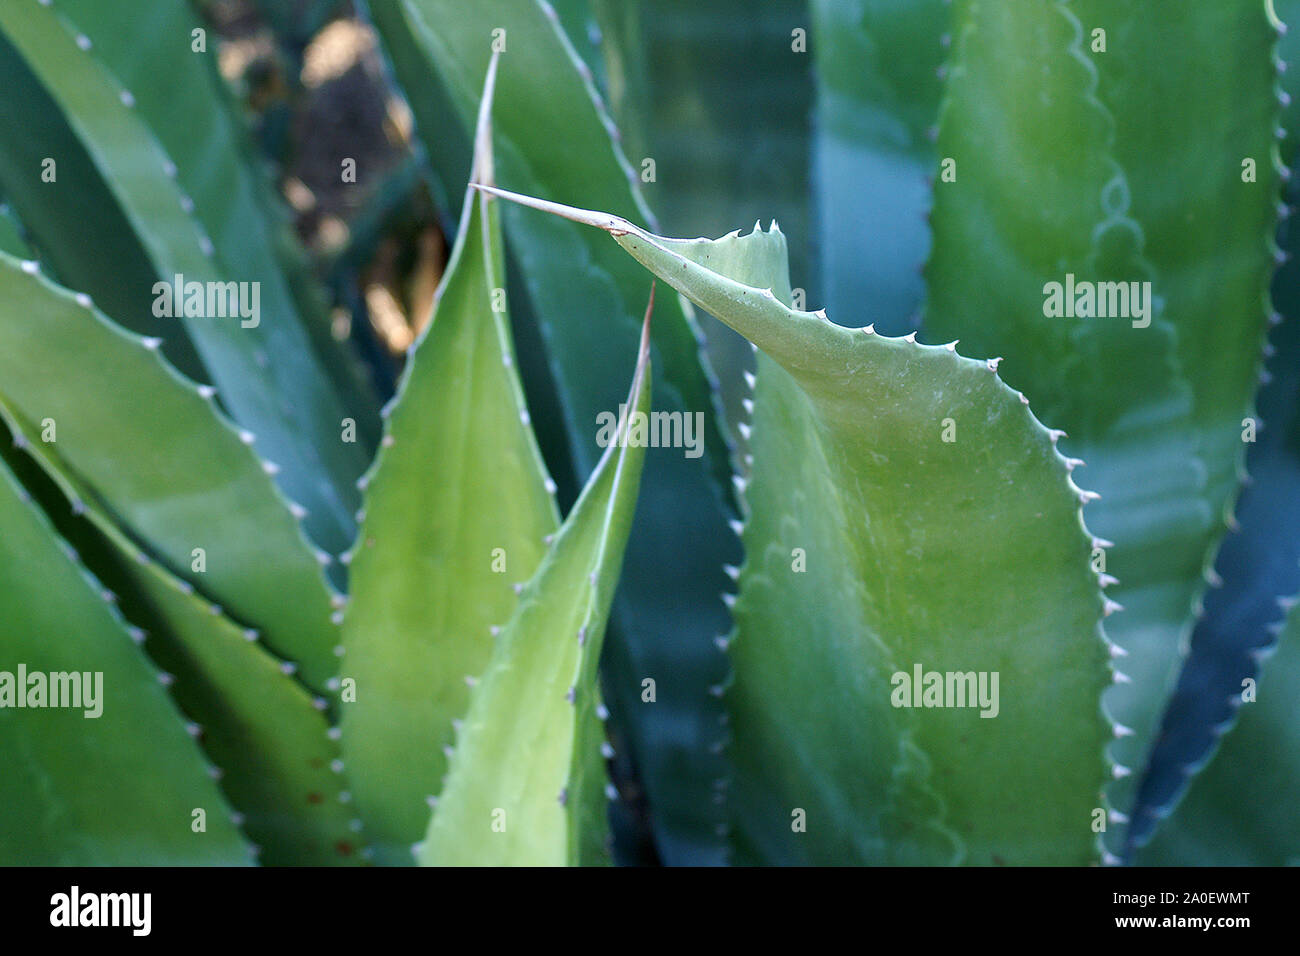 Aloe Vera Pflanze Nahaufnahme. Aloe Vera Blätter aus der Nähe mit Details zu spitzen, gezackte Ränder. Hintergrund Aloe Vera Blätter mit scharfen Dornen. Stockfoto